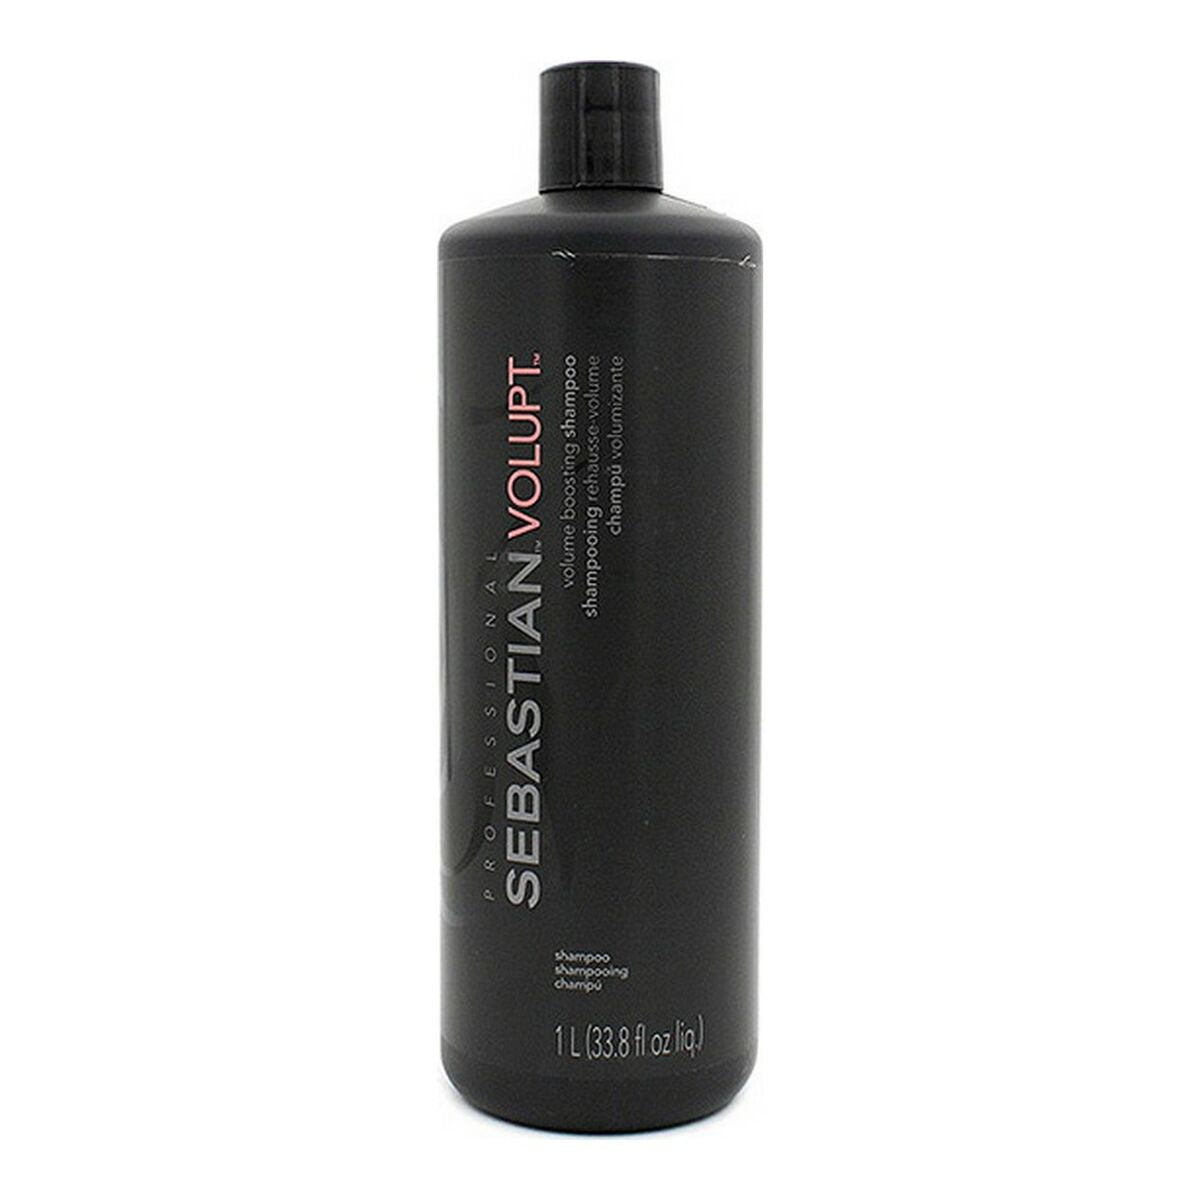 Shampoo Volupt Sebastian-0